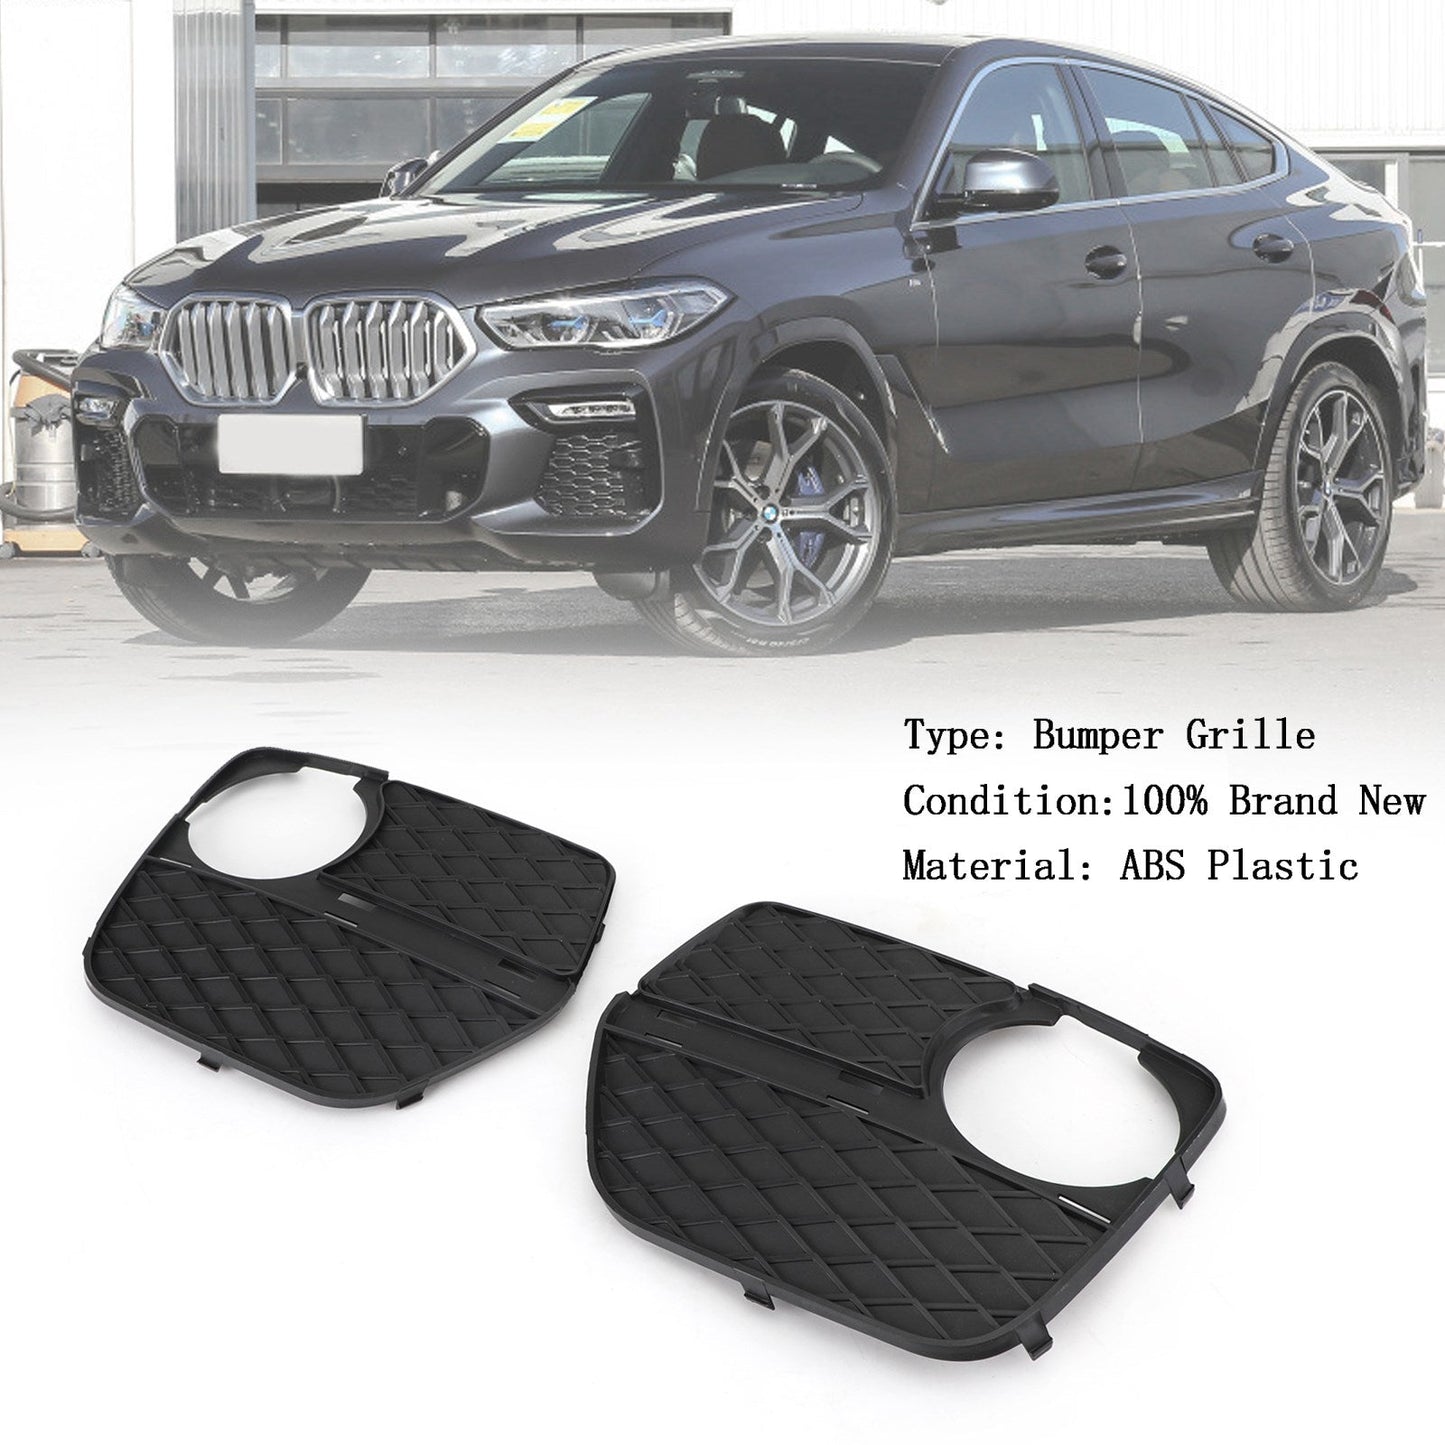 2x vordere Stoßfänger geschlossene Gitter Nebel Leichtkühler links und rechts Fit BMW x6 2012-2014 Generisches Generikum